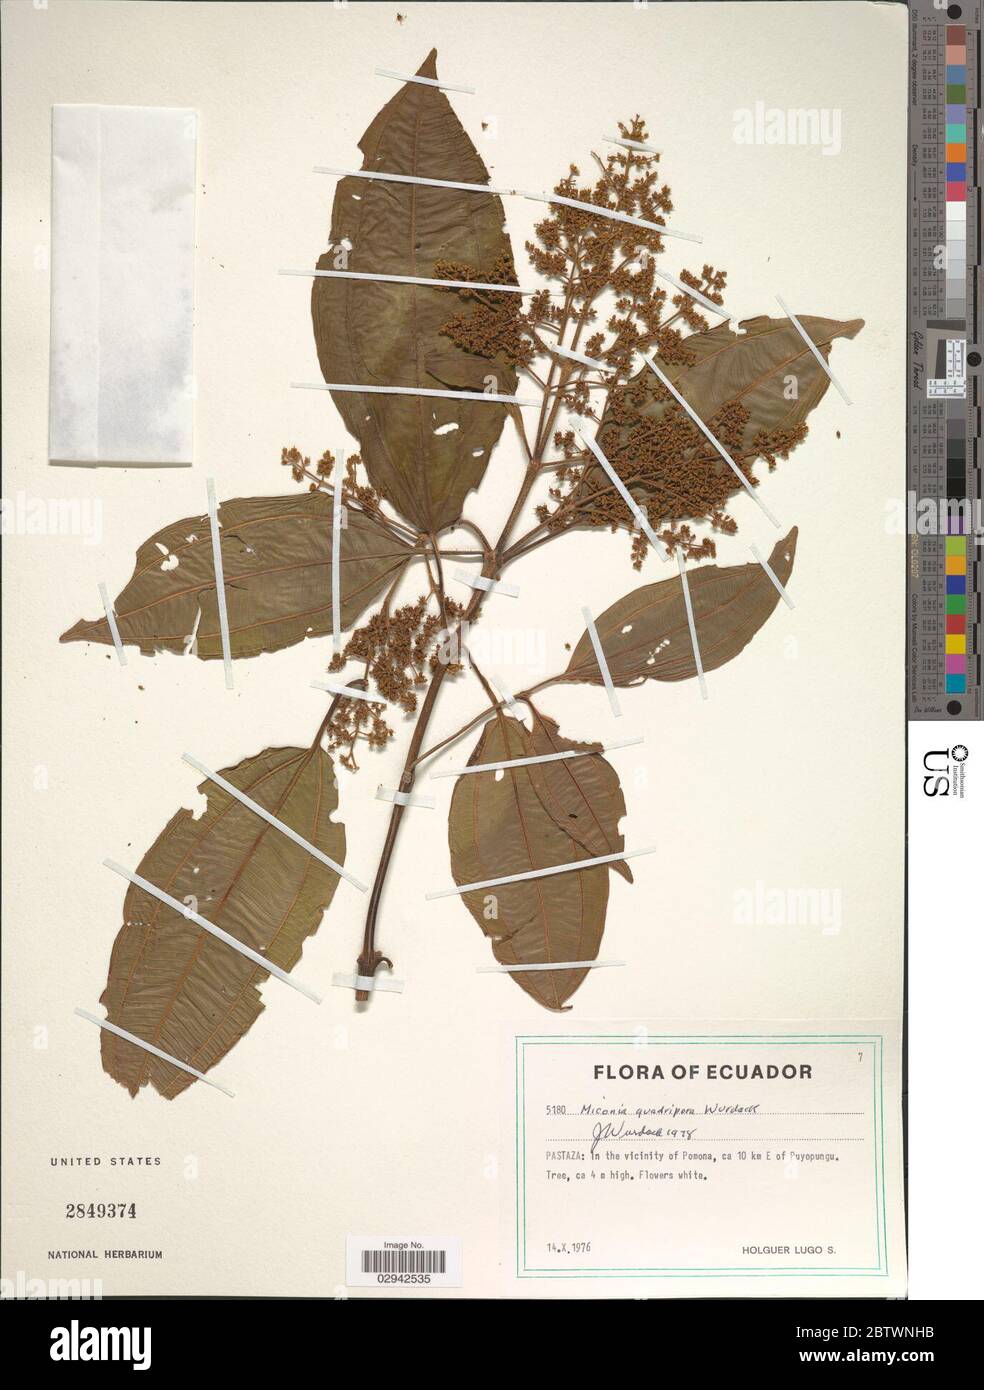 Miconia quadripora Wurdack. Stock Photo